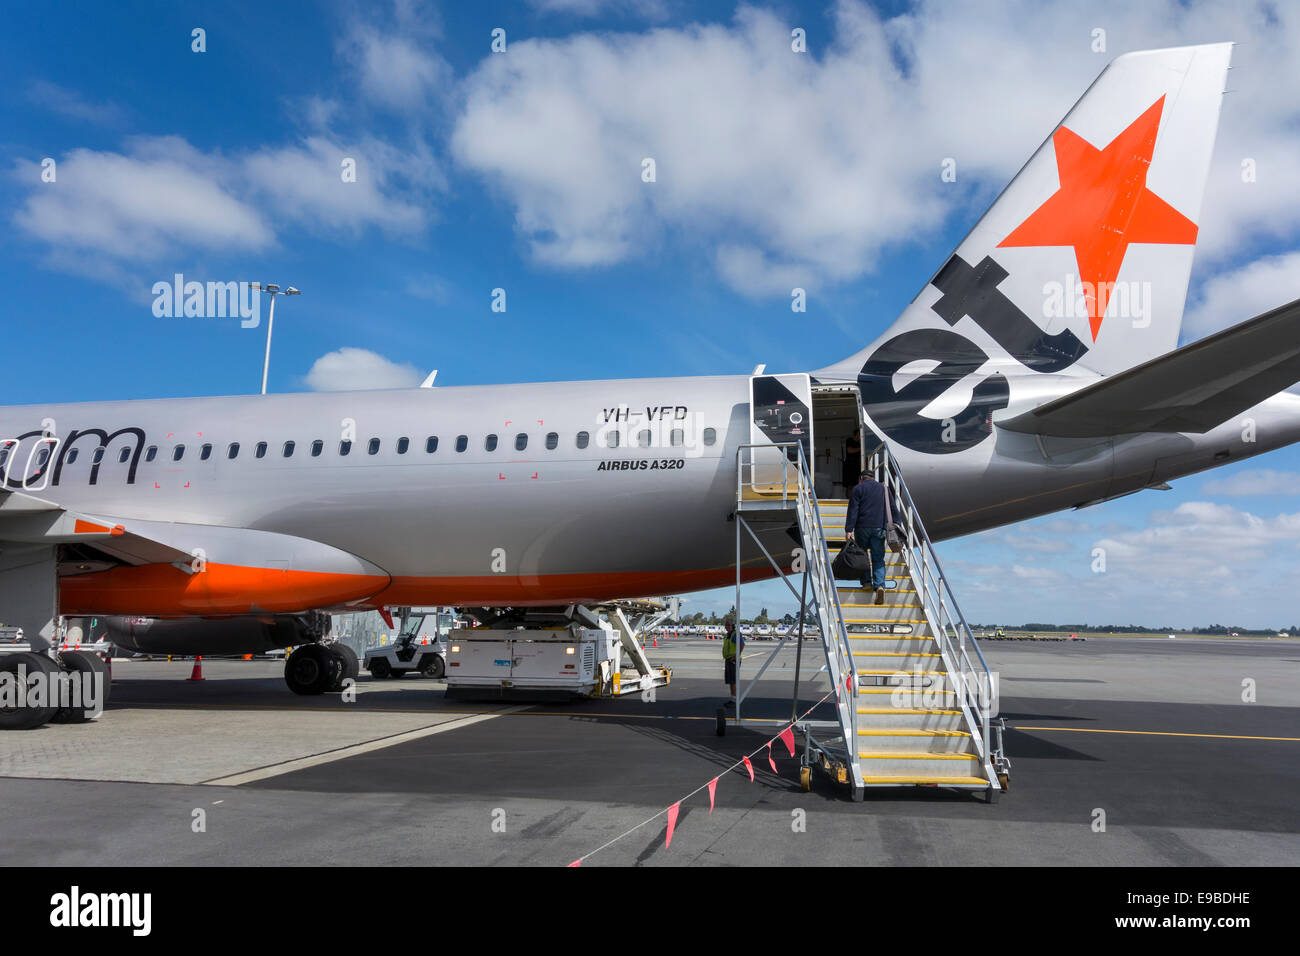 Jetstar A320 am Flughafen von Christchurch. Einzelne Passagier ein Jetstar Flugzeug mit einem Internat Rampe einsteigen Treppen Stockfoto